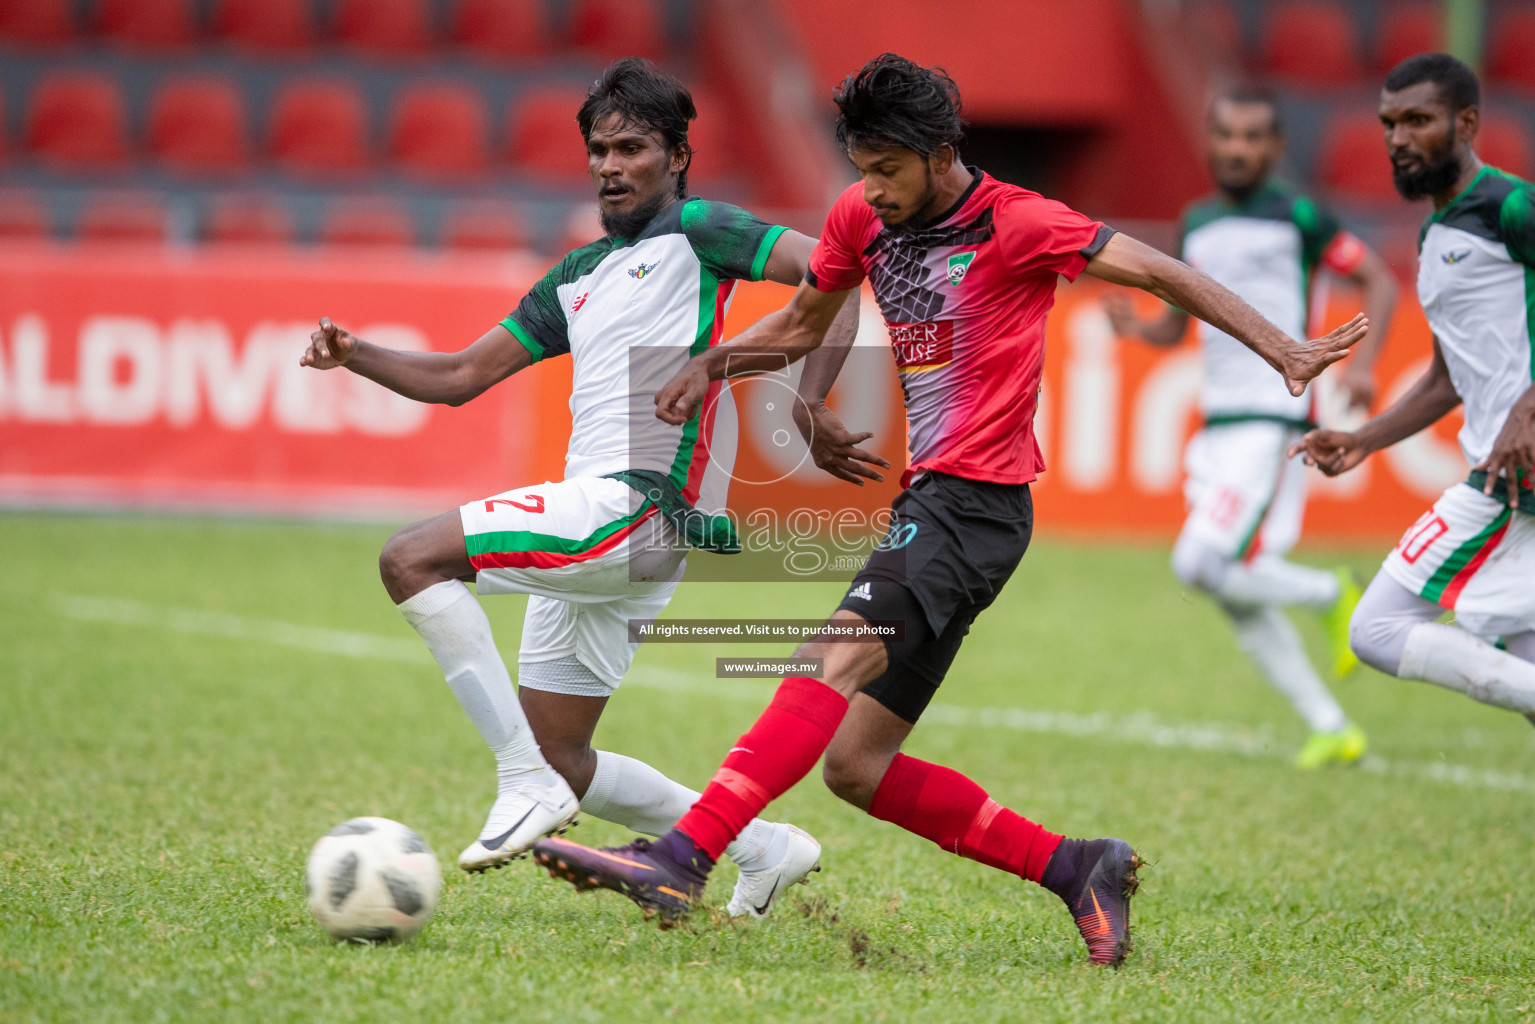 Da Grande SC vs Foakaidhoo FC in Dhiraagu Dhivehi Premier League 2019 held in Male', Maldives on 20th June 2019 Photos: Shuadh Abdul Sattar/images.mv